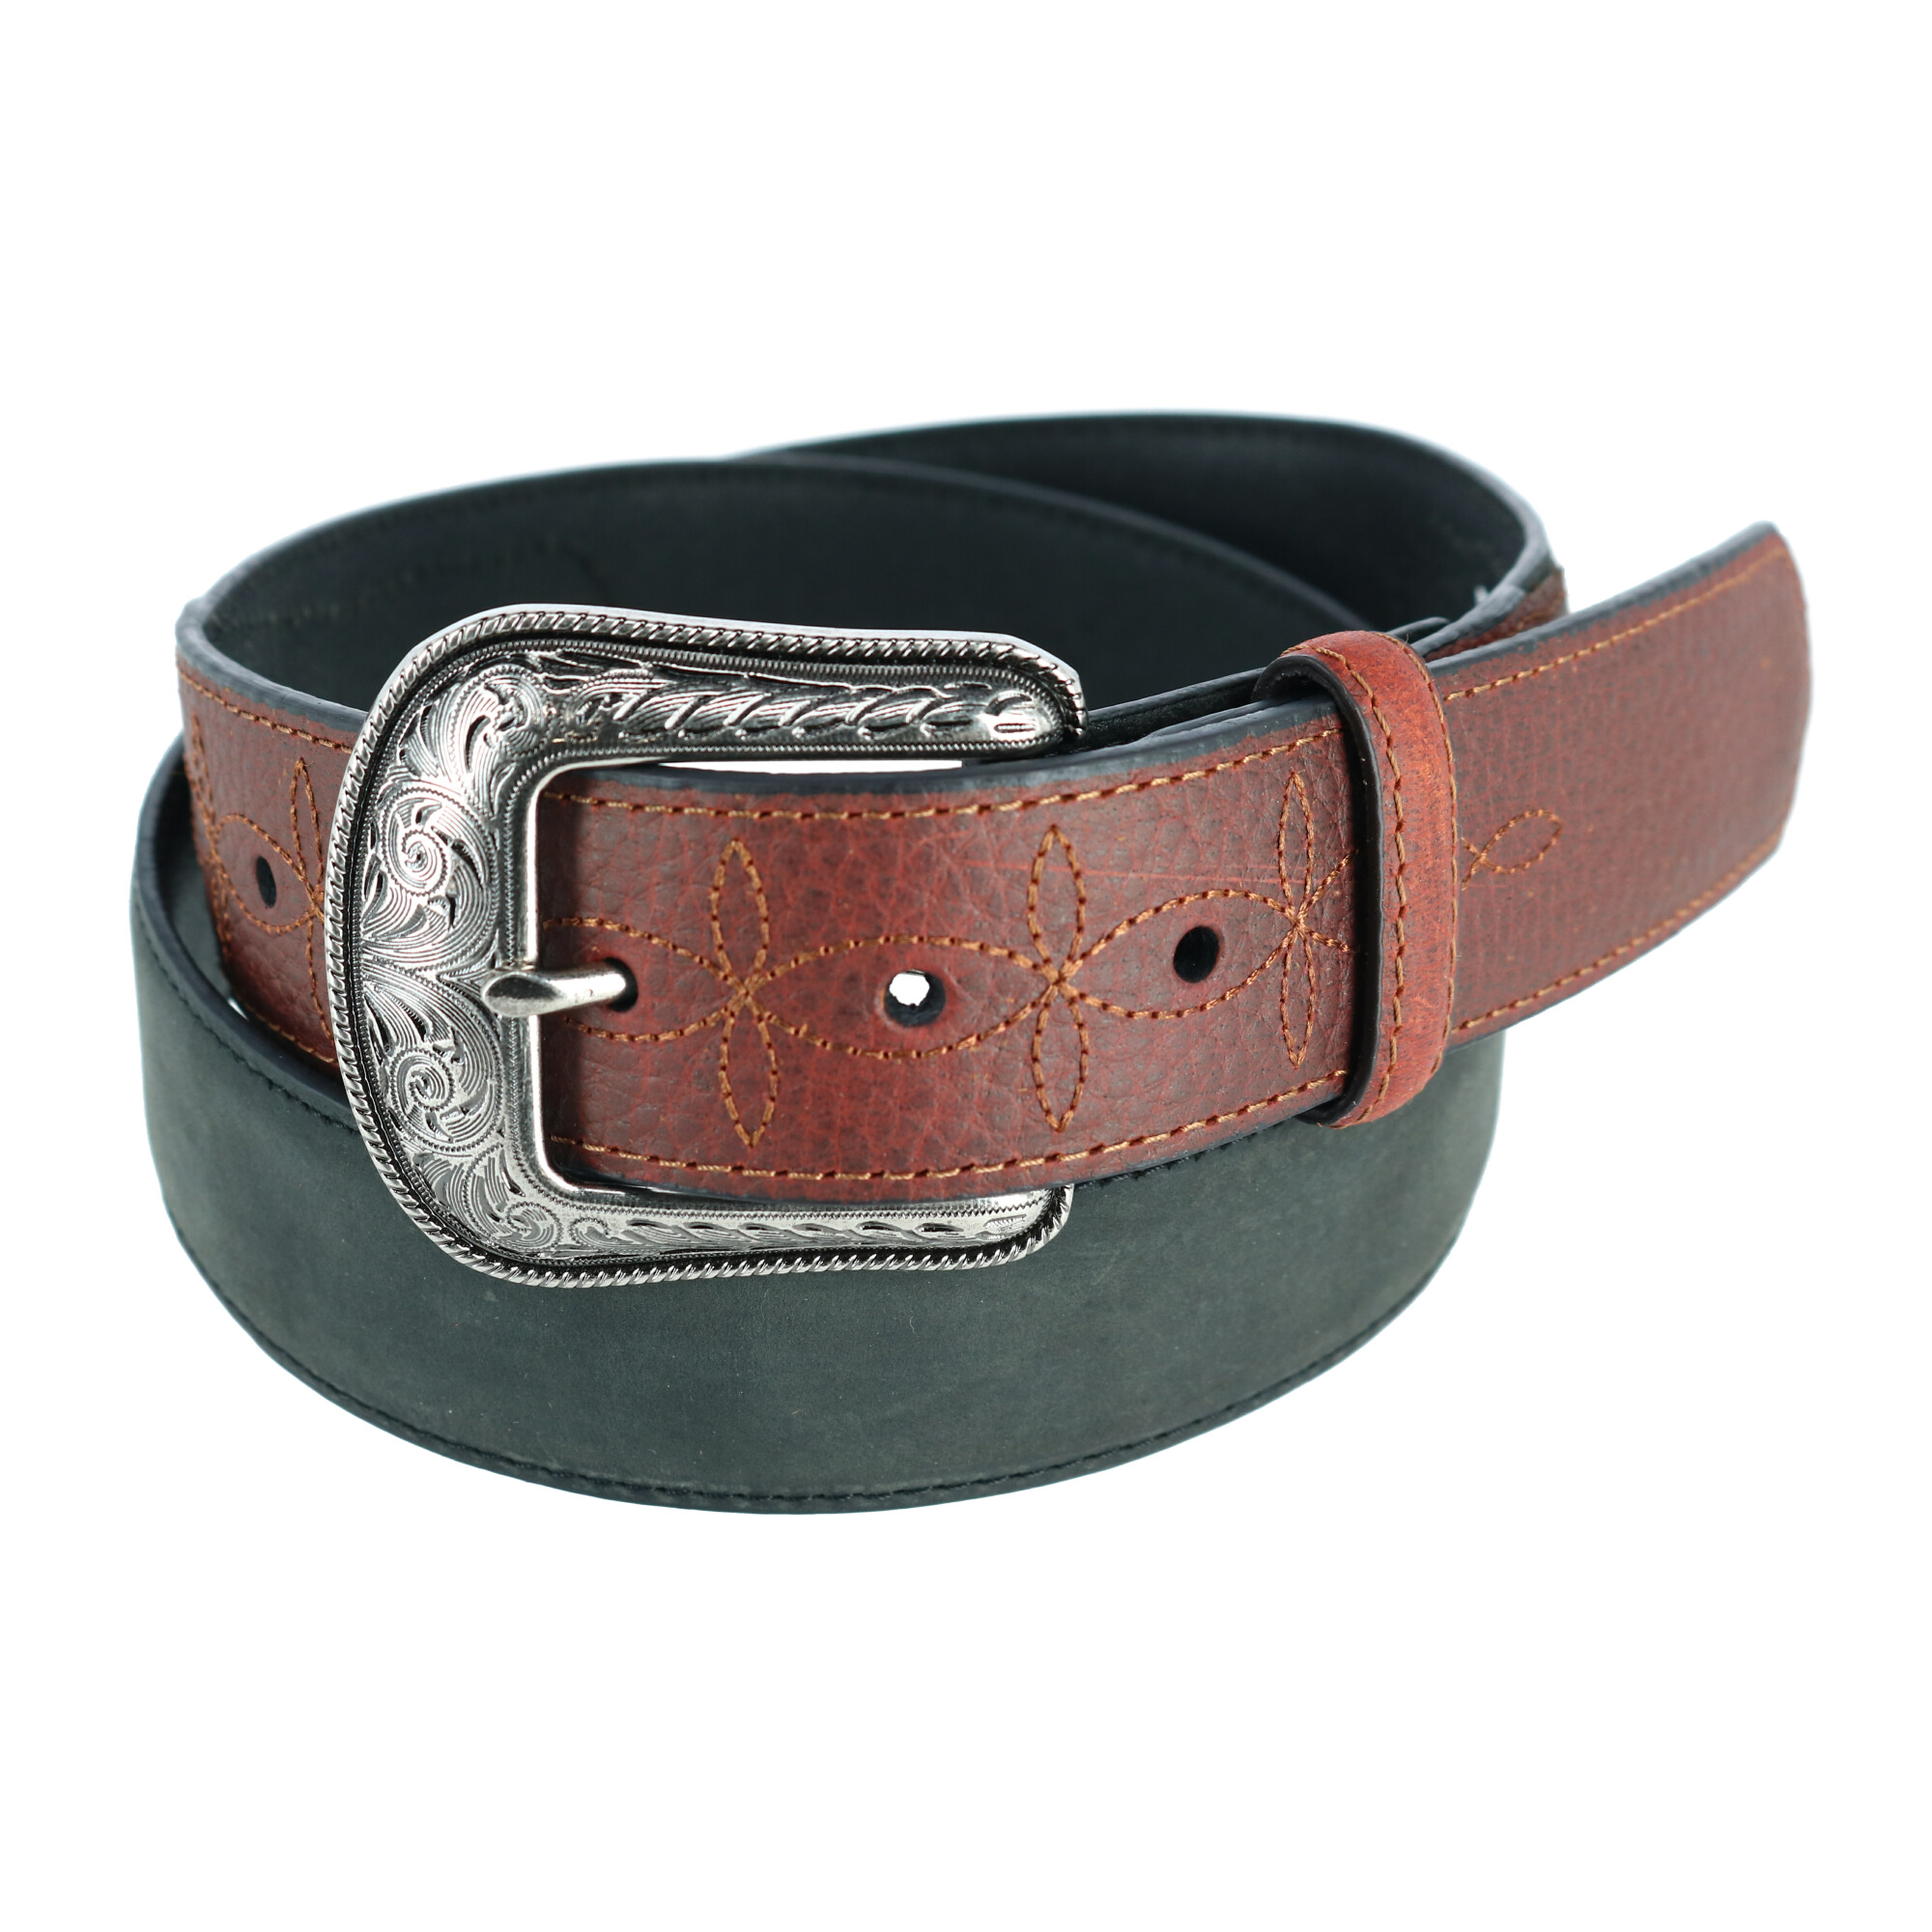 Wrangler Men's Bison and CrazyHorse Leather Belt with Billets